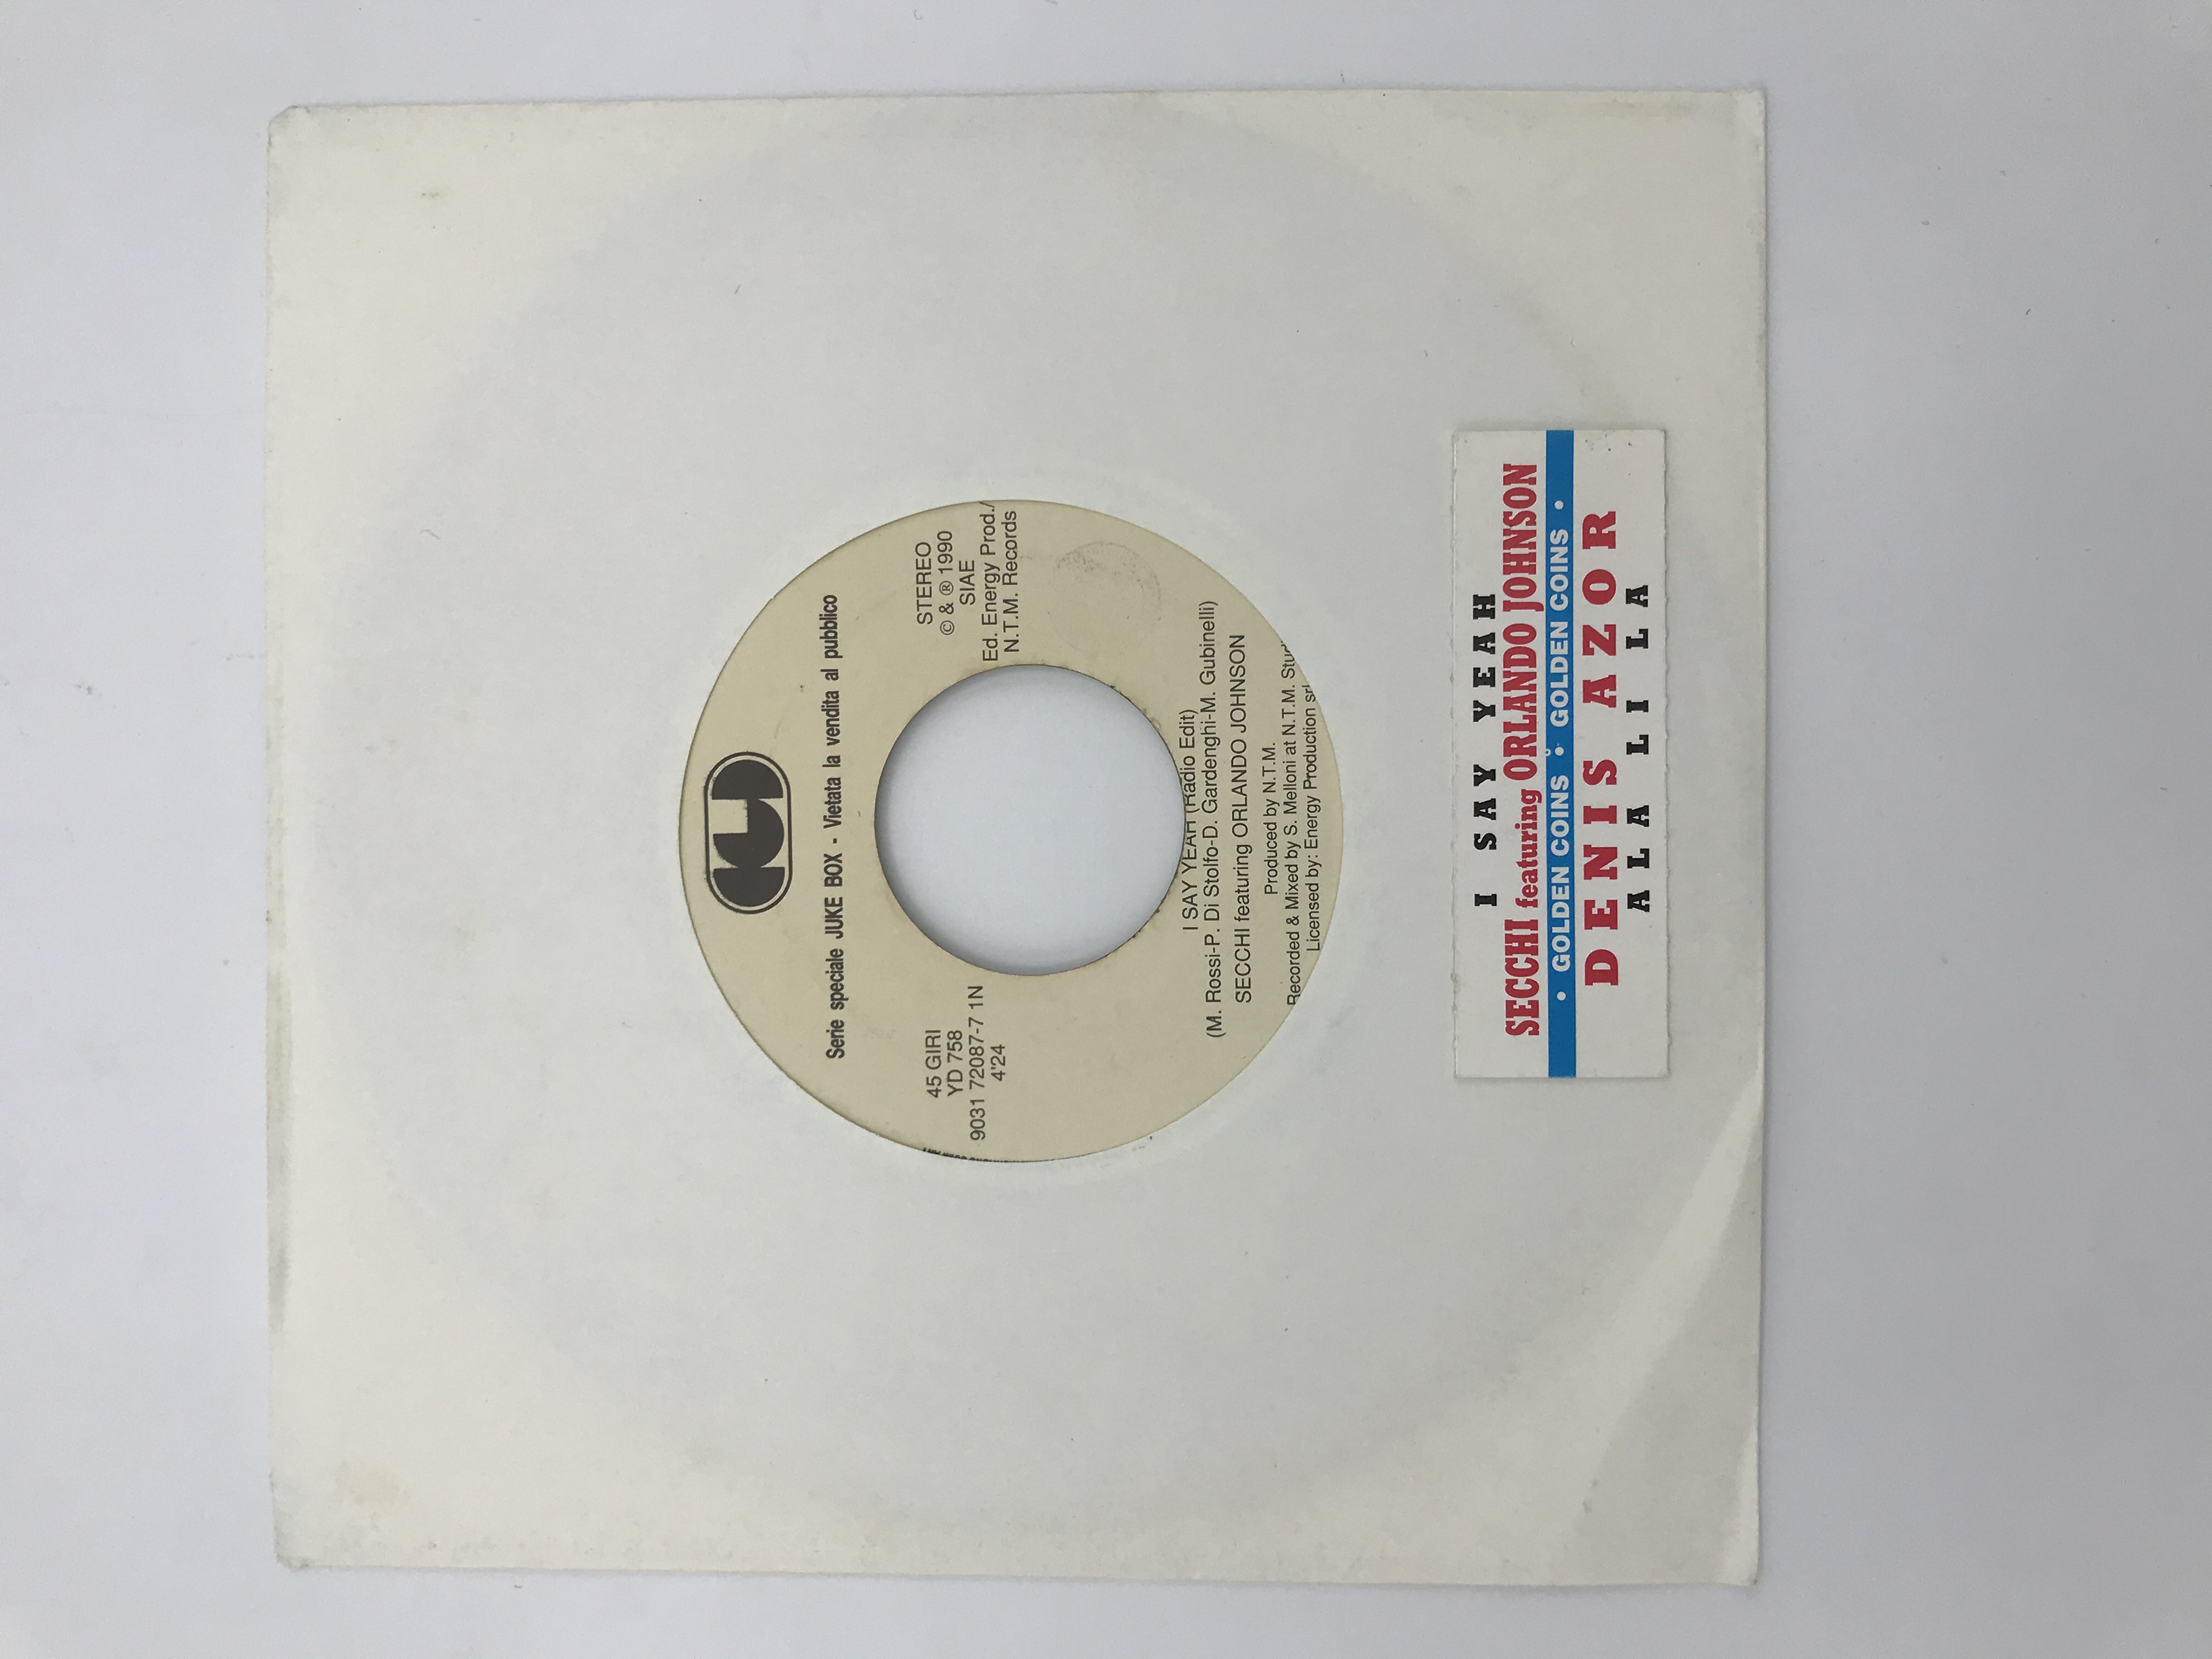 Juke Box 45 rpm disc with Secchi ft Orlando Johnson and Denis Azor label